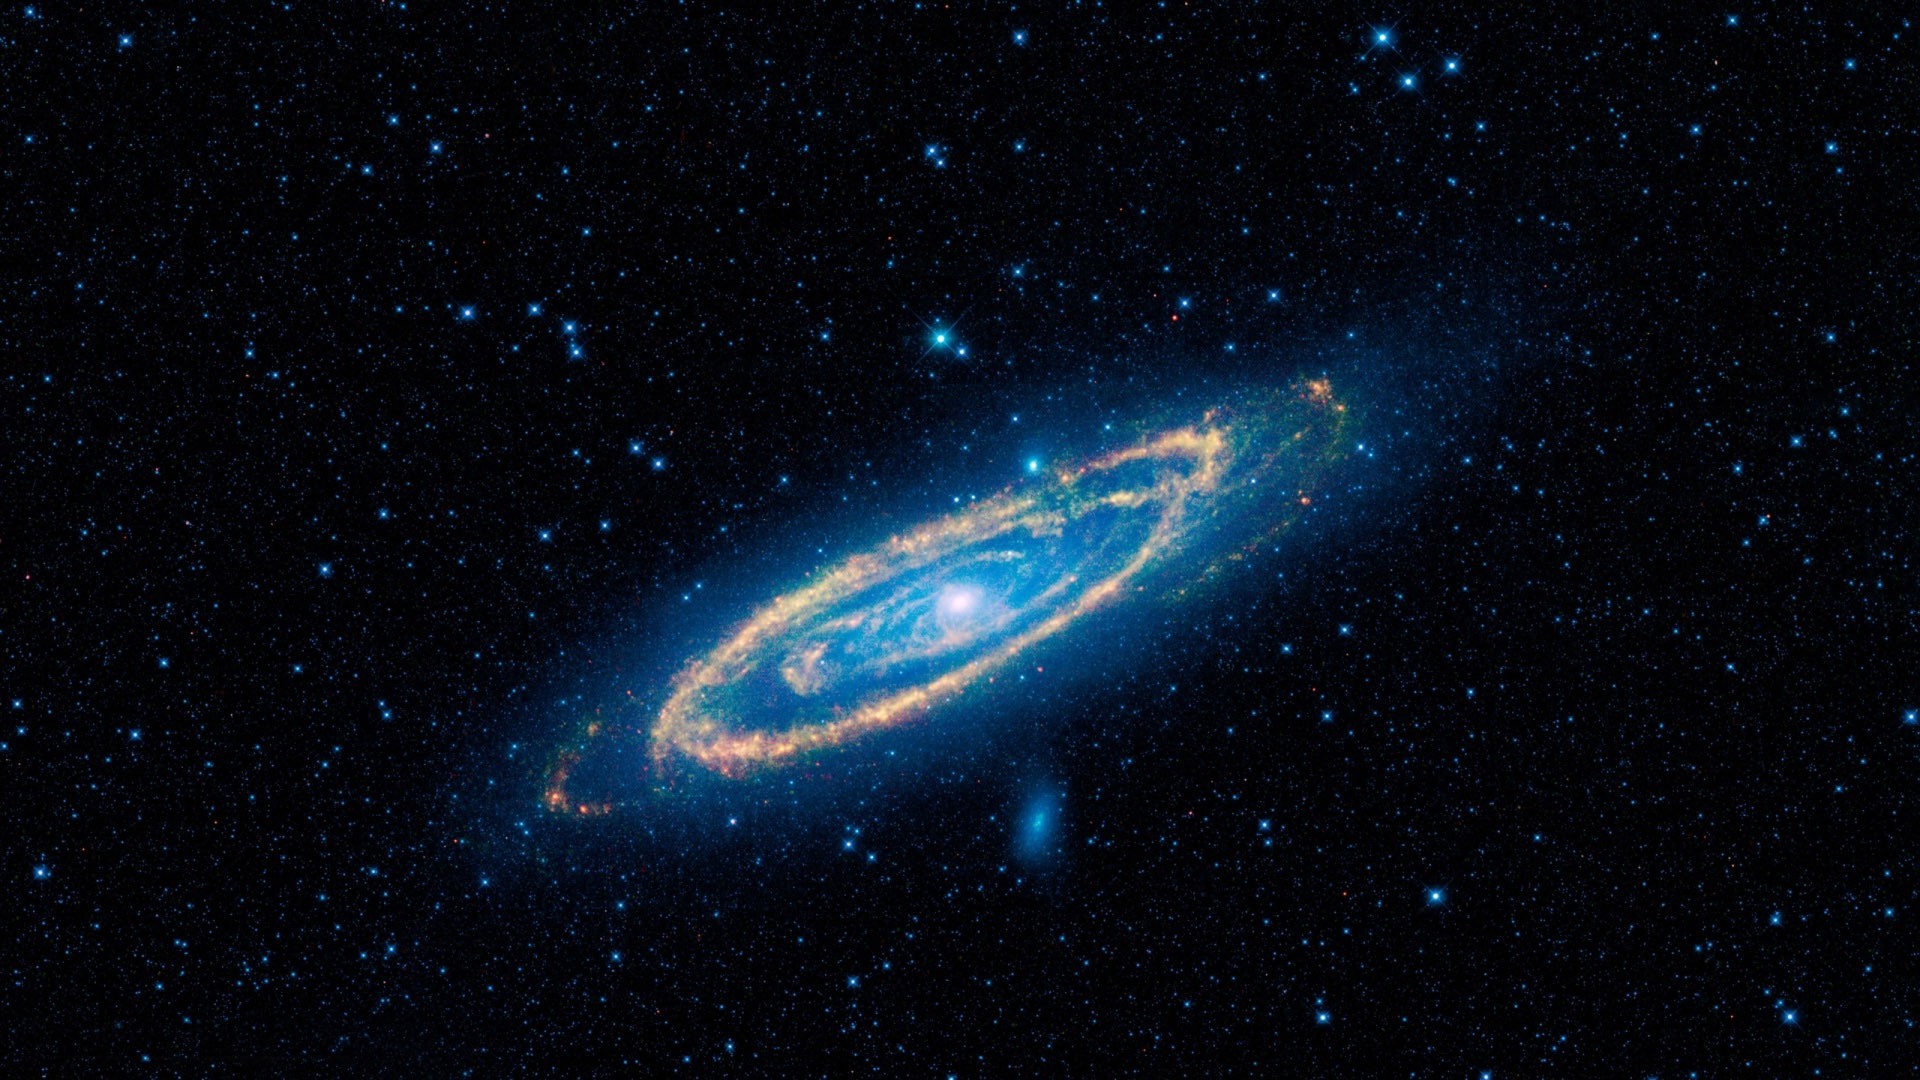 Andromeda Galaxy 1920X1080 Wallpapers